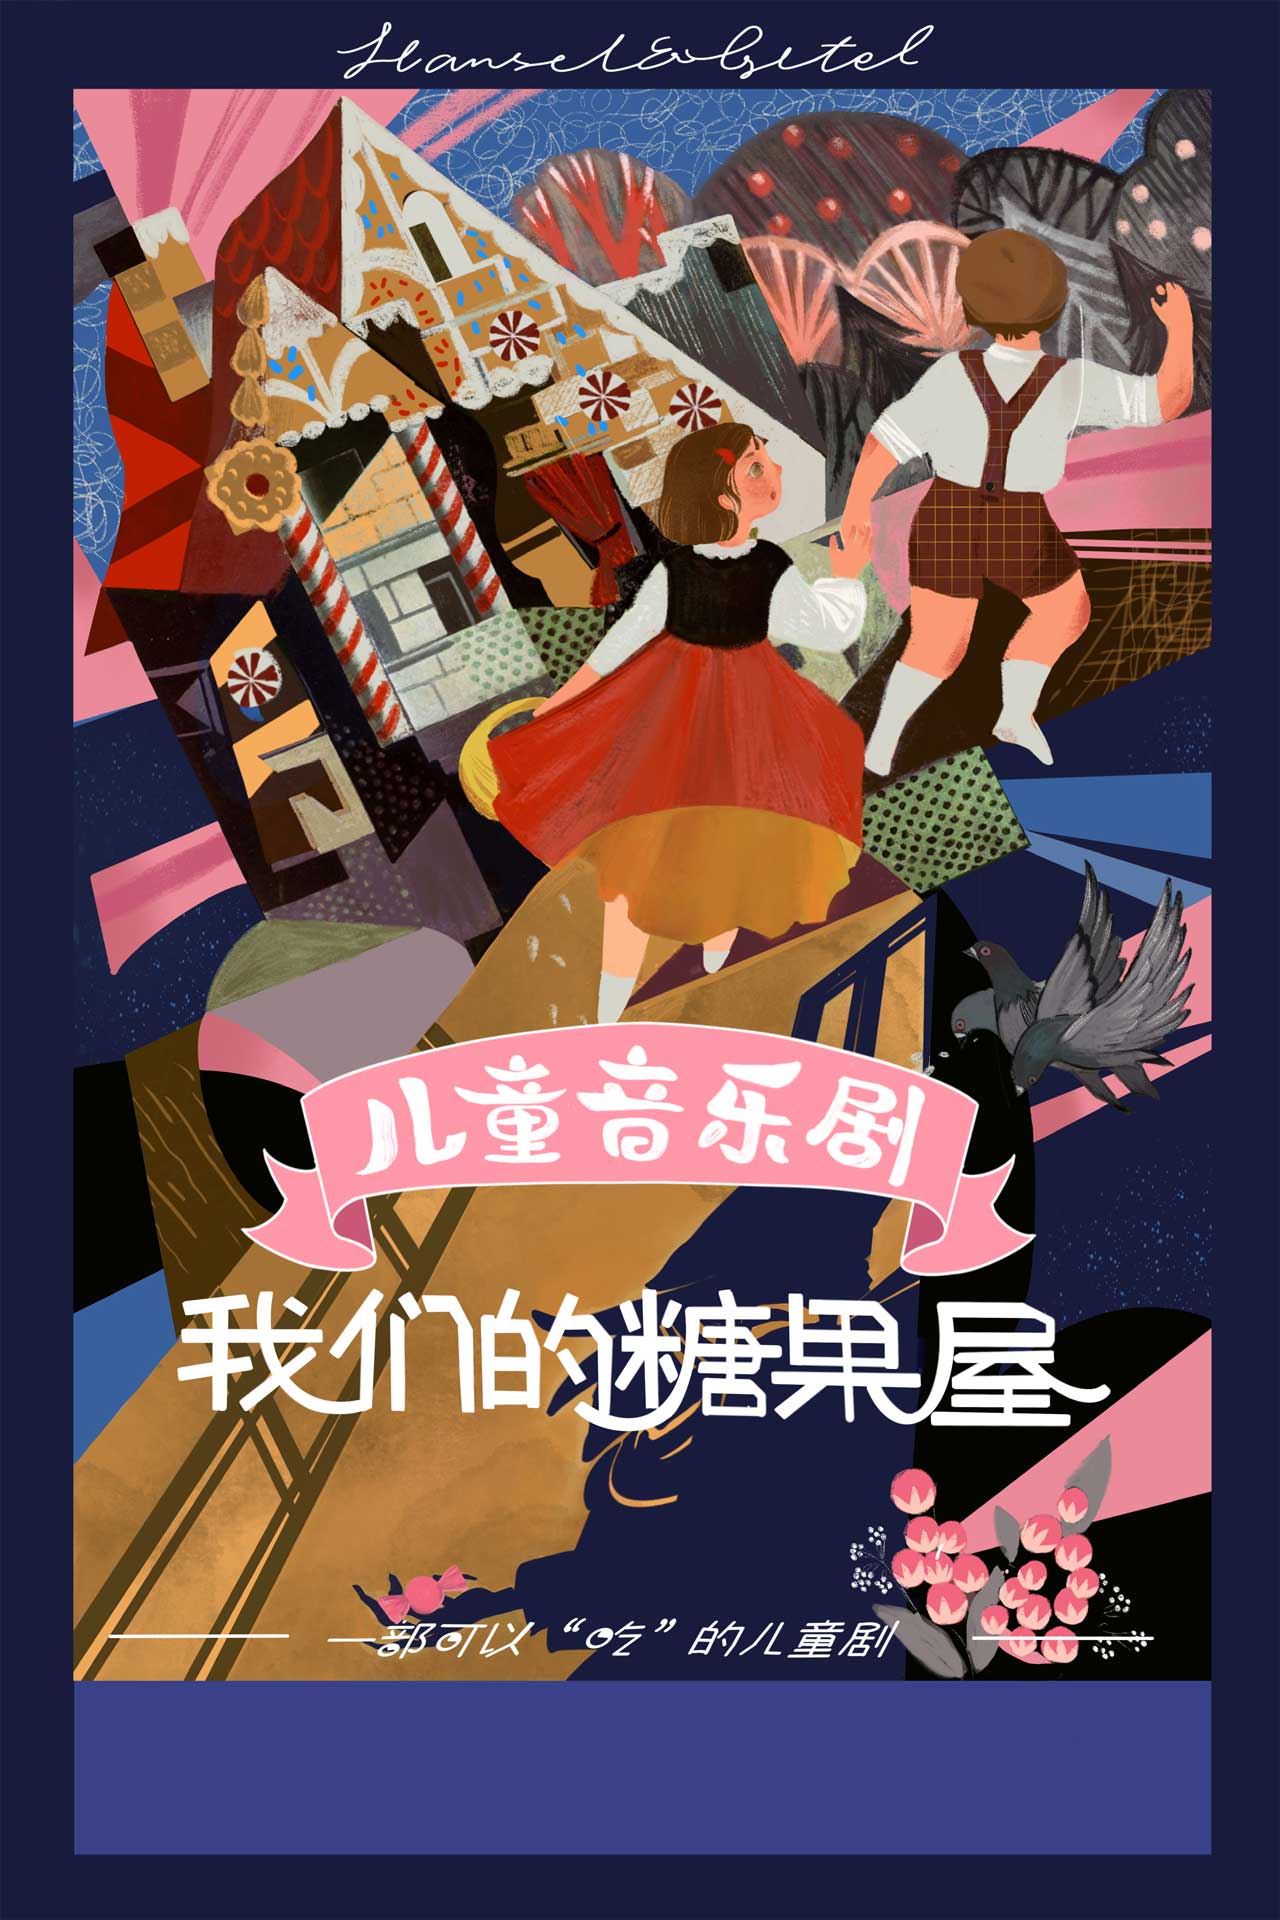 中英双语儿童音乐剧《我们的糖果屋》广州站